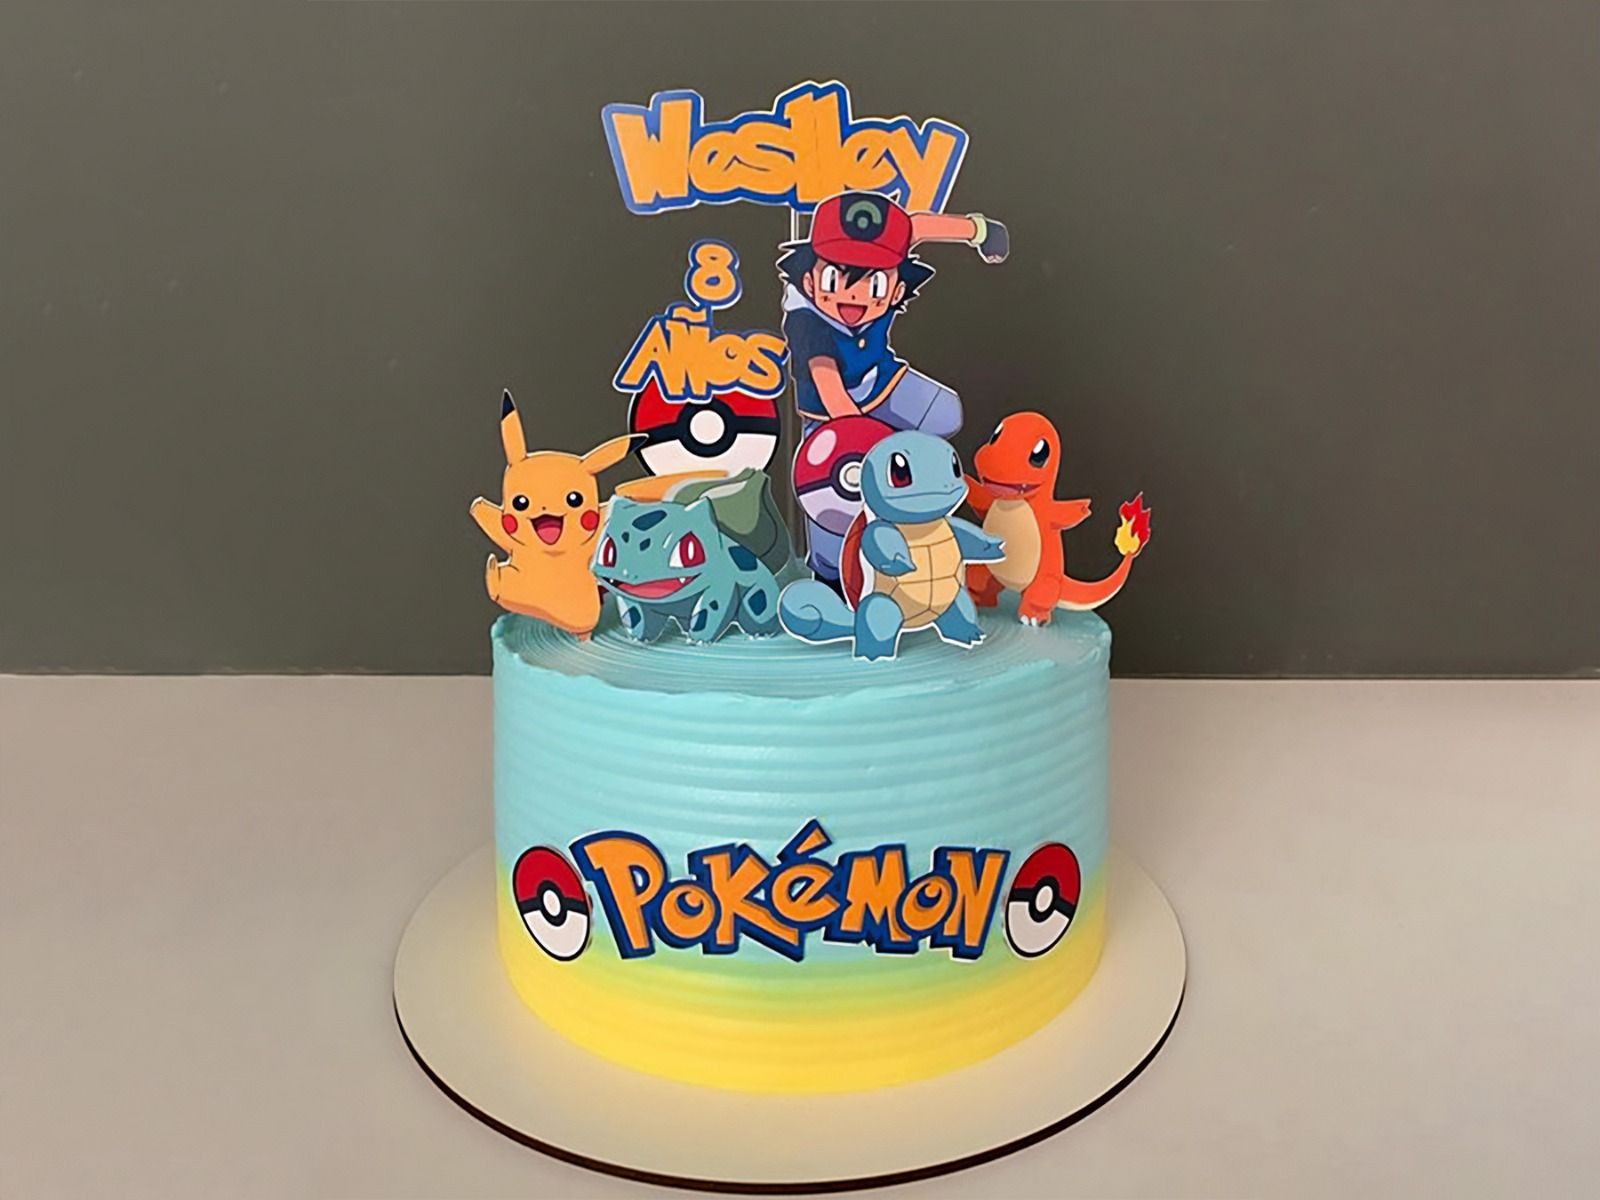 Pokémon Pikachu Layer Cake - Classy Girl Cupcakes